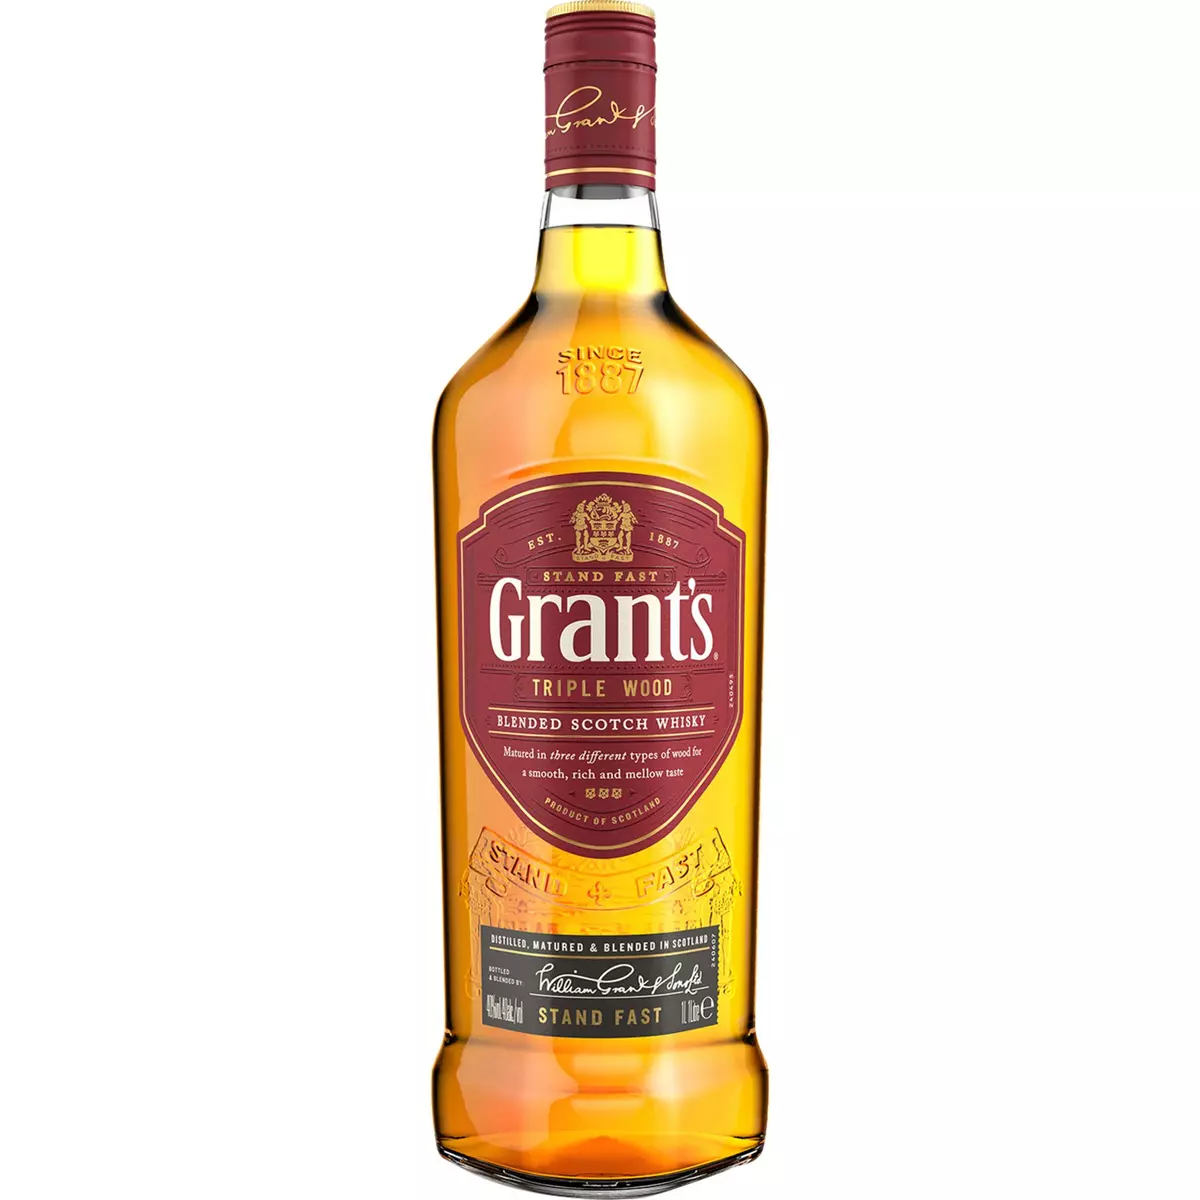 CHIVAS REGAL Scotch Whisky écossais 12 ans 40% 2 verres offerts 70cl pas  cher 